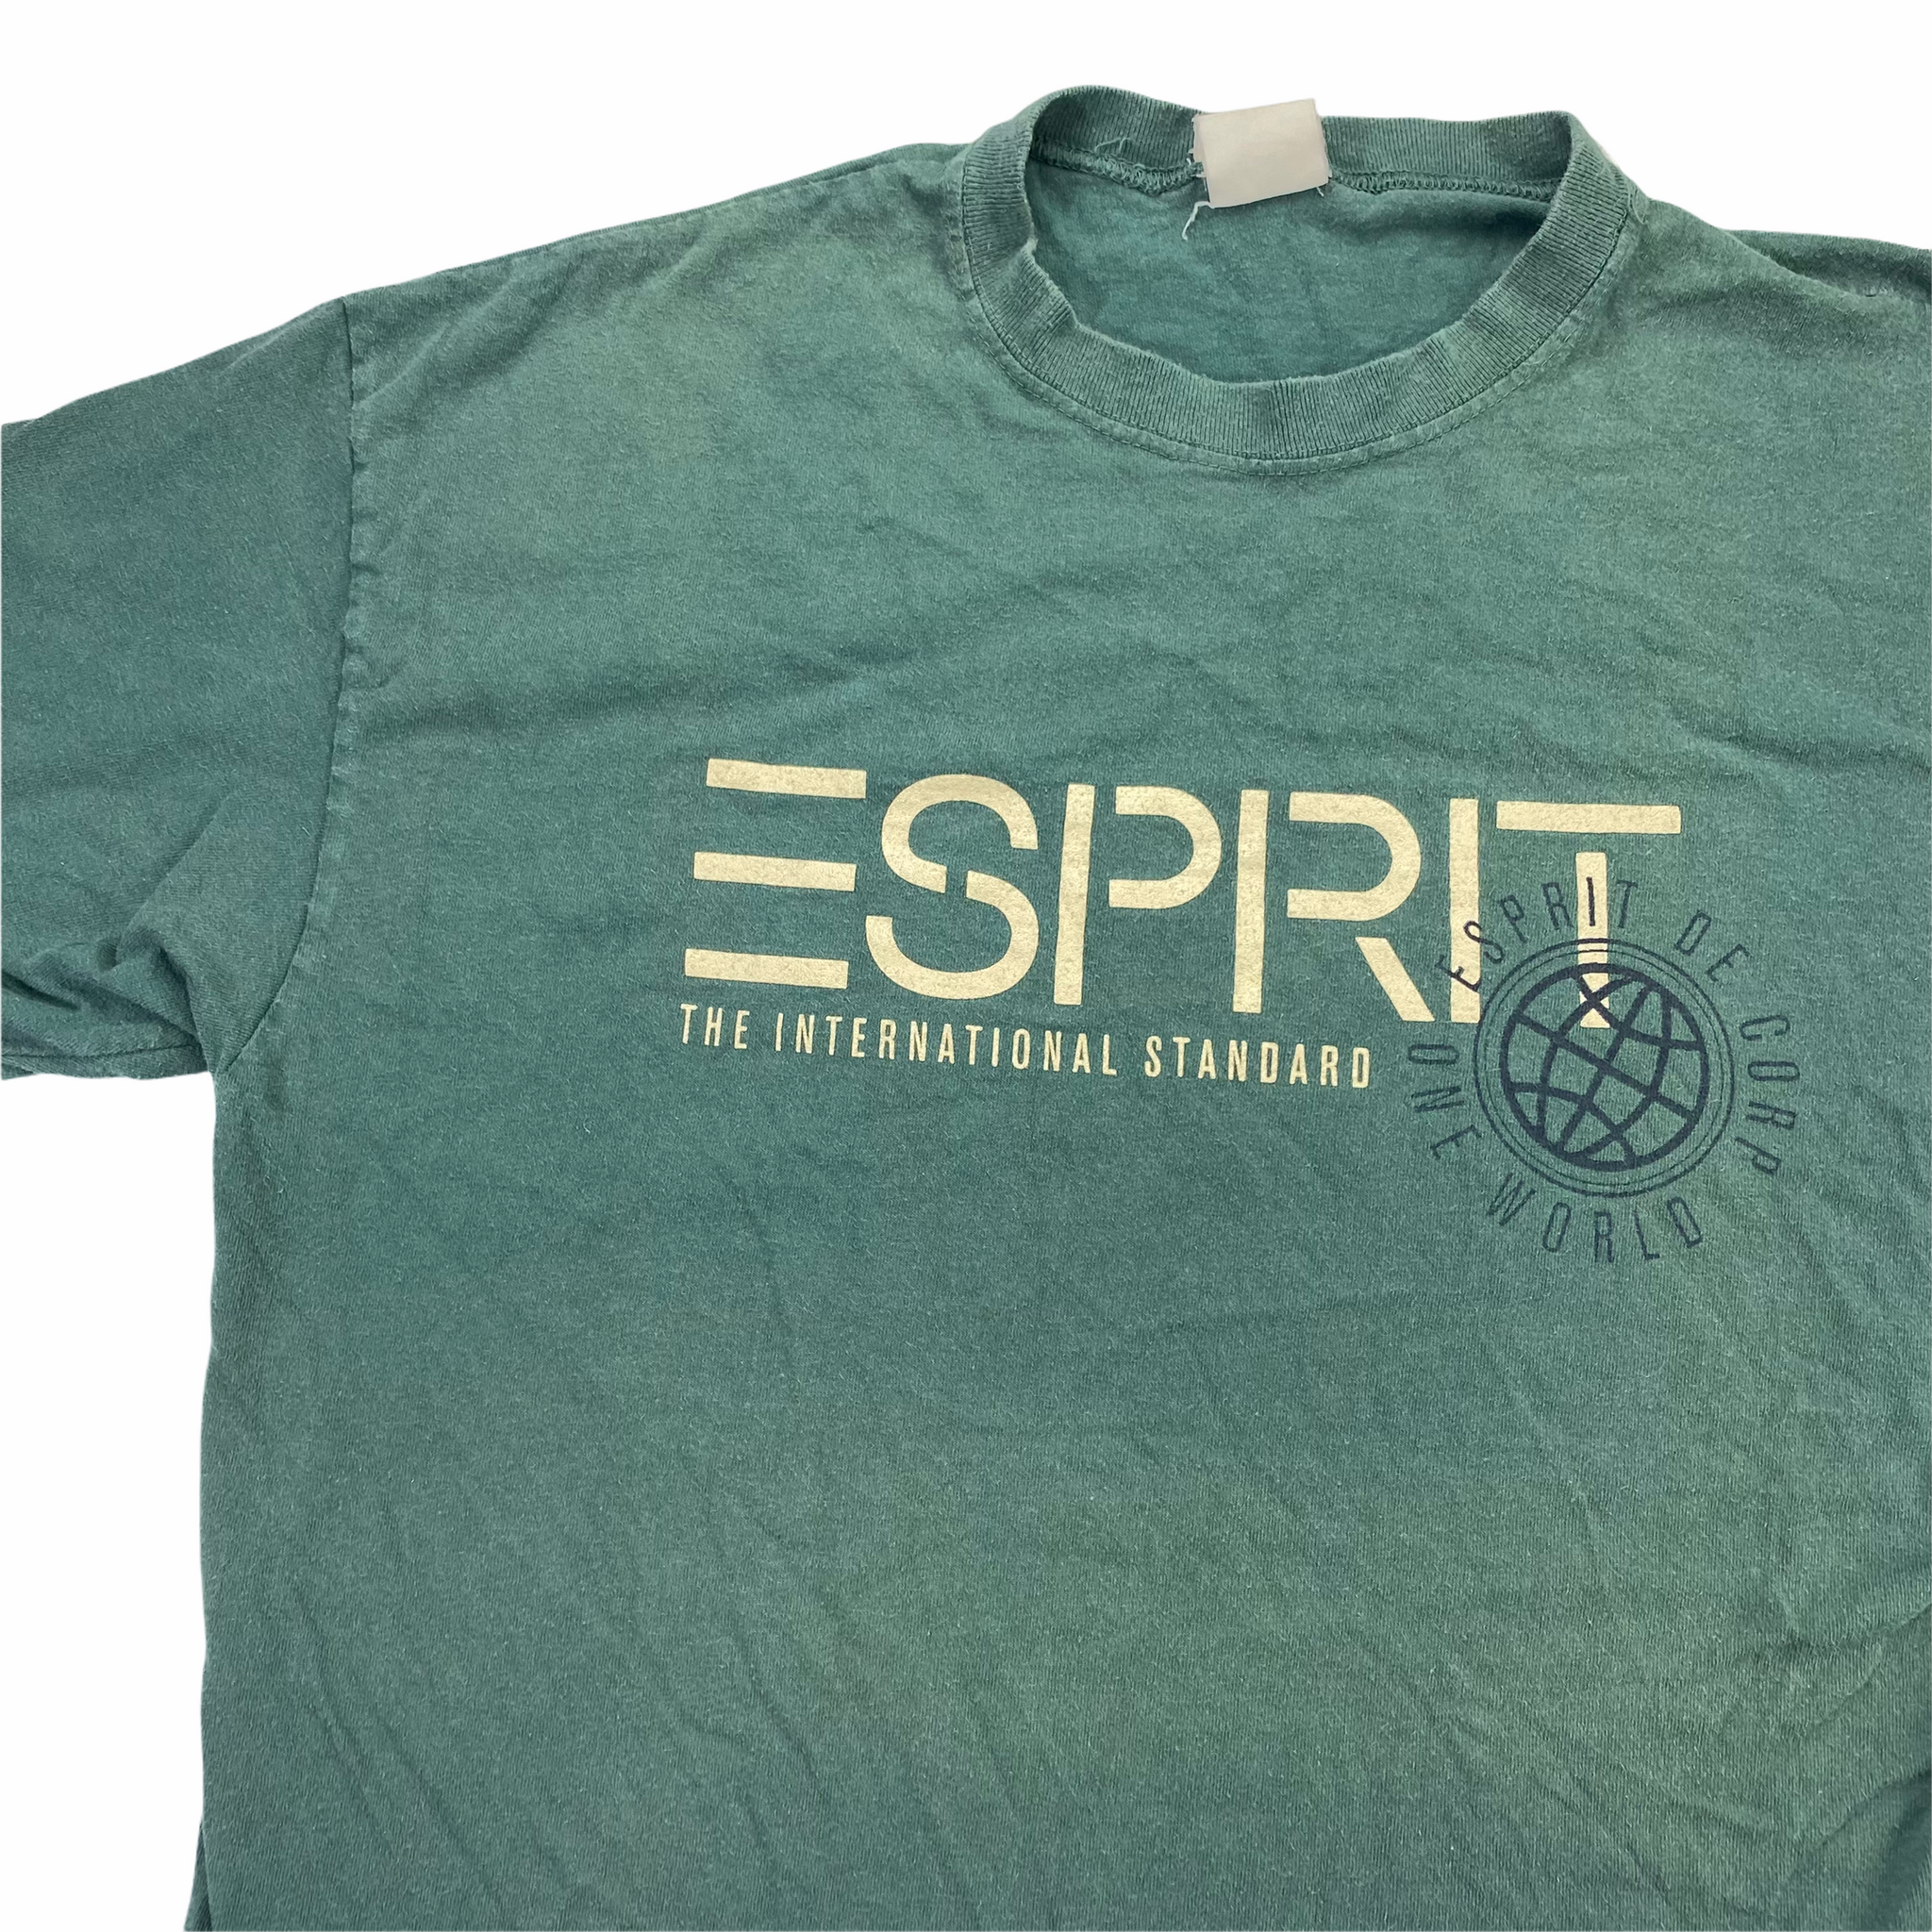 90s Esprit T-Shirt XL